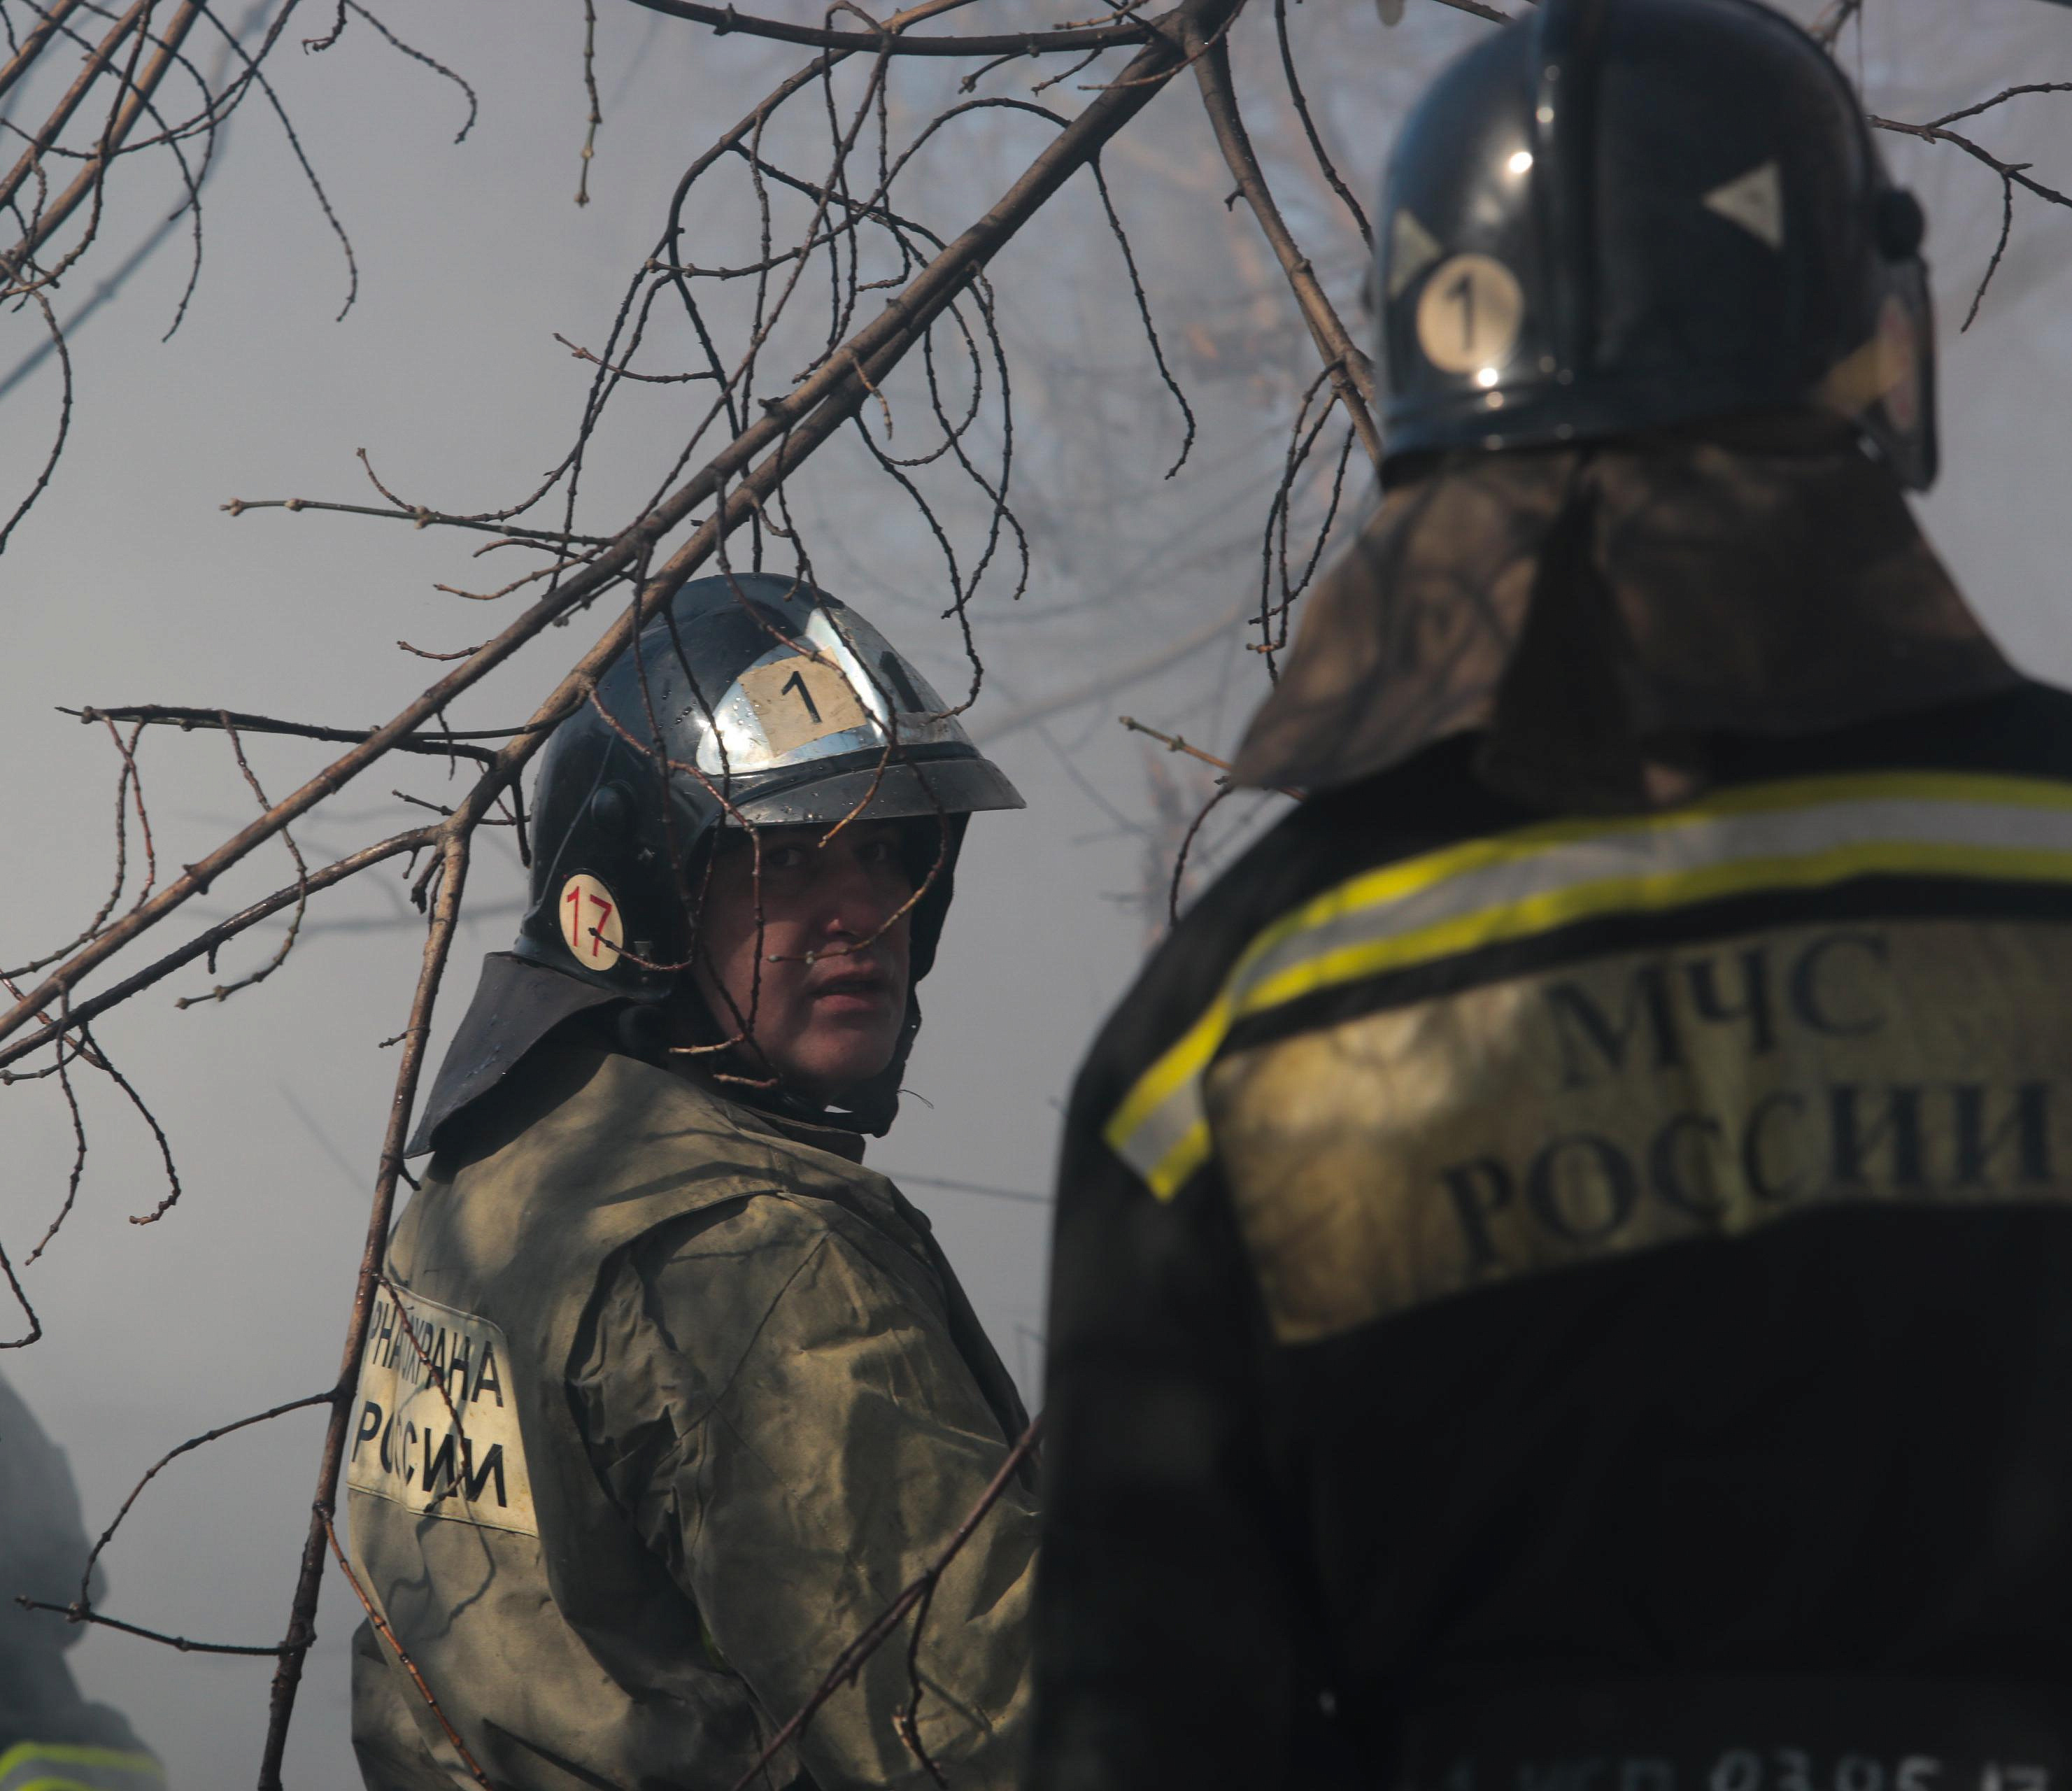 31 пожар произошёл в Новосибирске за неделю: погиб один человек